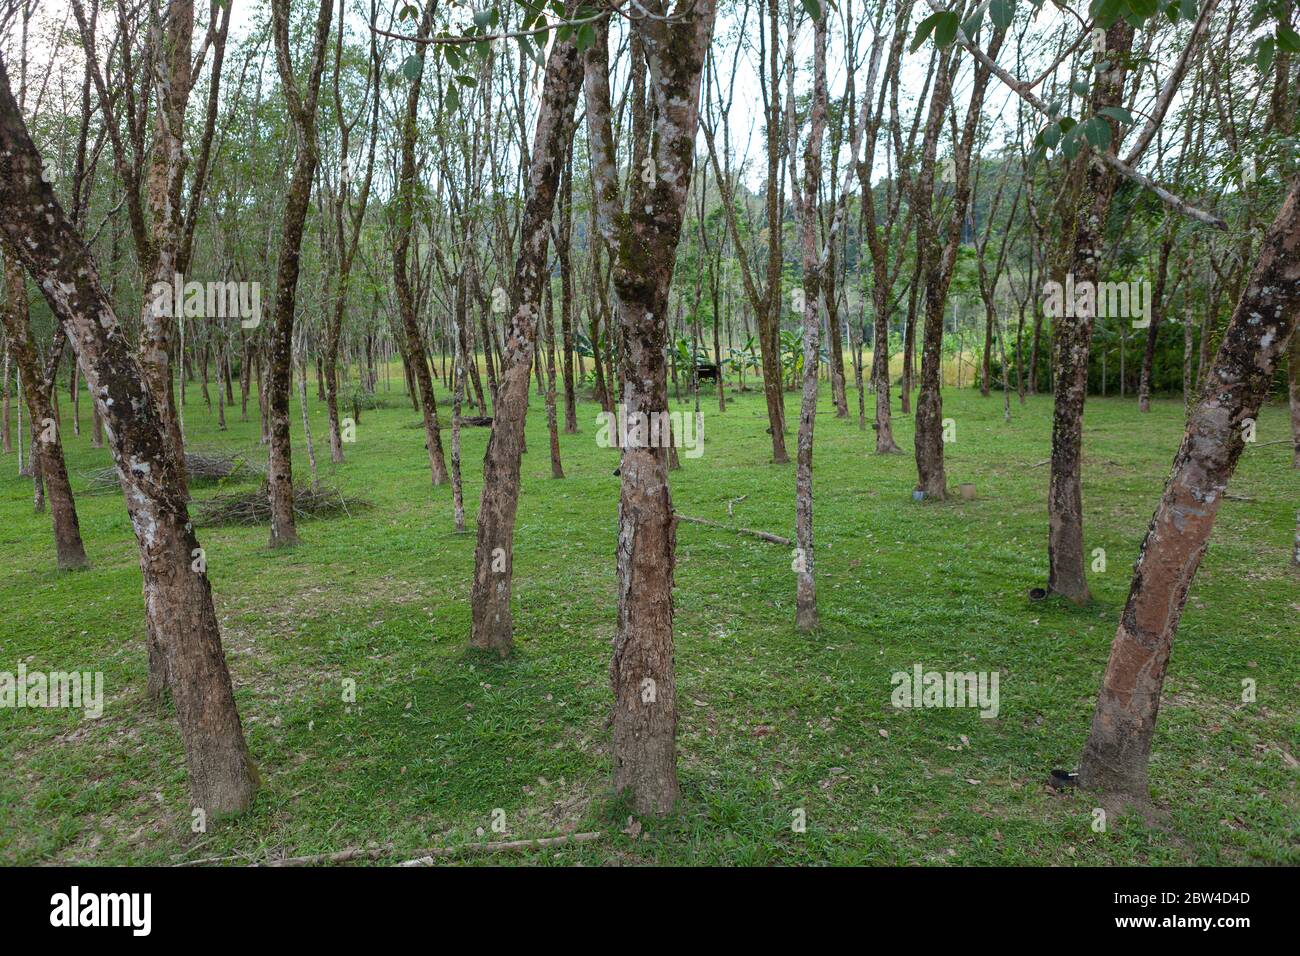 Paysage de Hevea brasiliensis Muell. Jardin ARG. Ou Para Rubber Banque D'Images